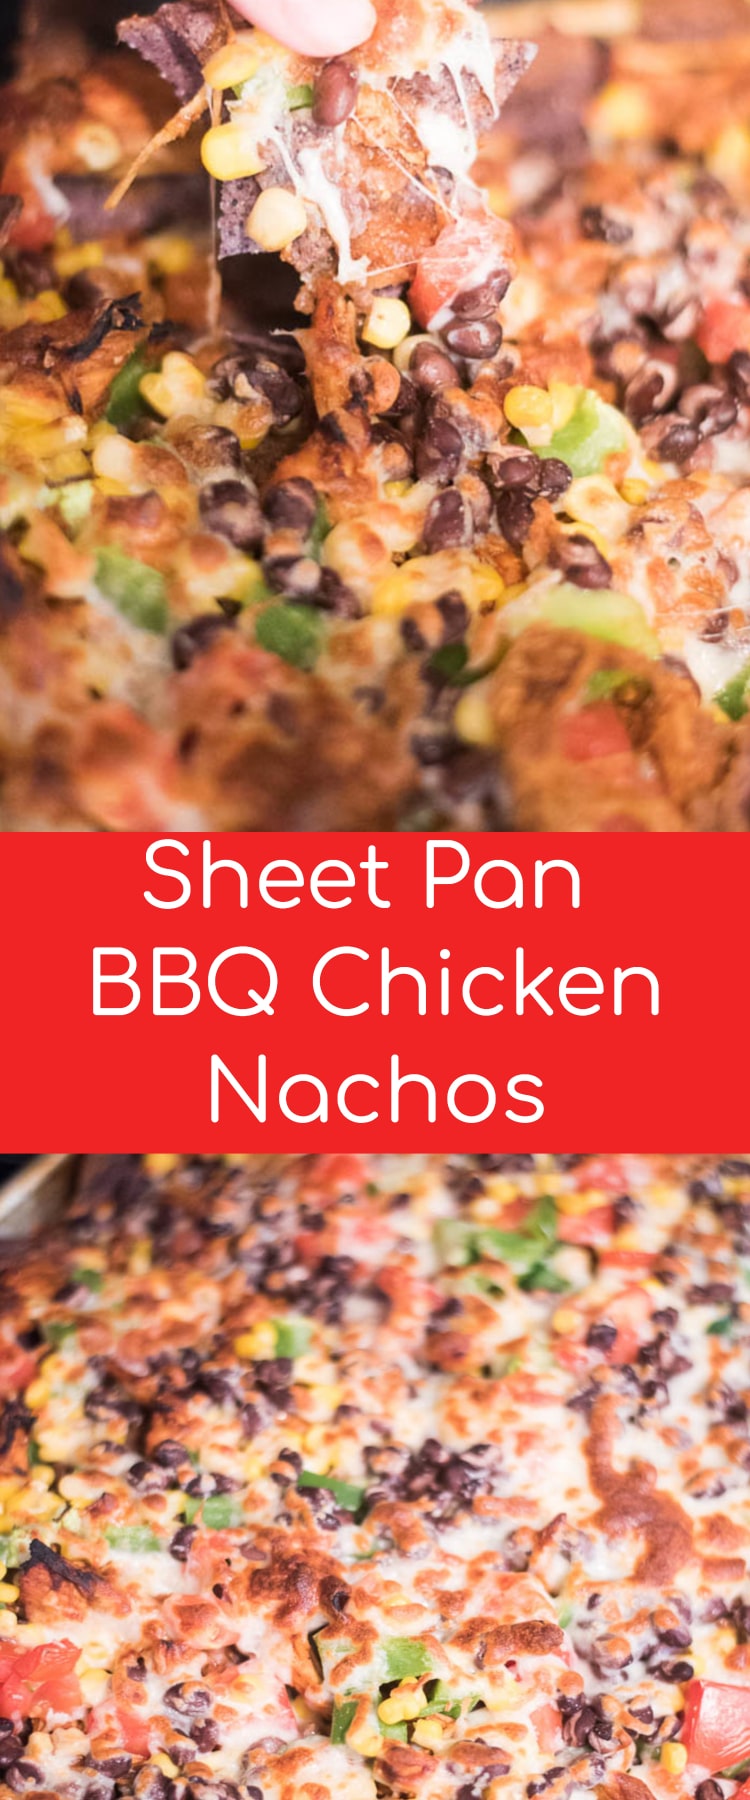 BBQ Chicken Nachos / SHeet Pan Nachos / Best Chicken Nachos / Pulled Chicken Nachos #nachos #appetizer